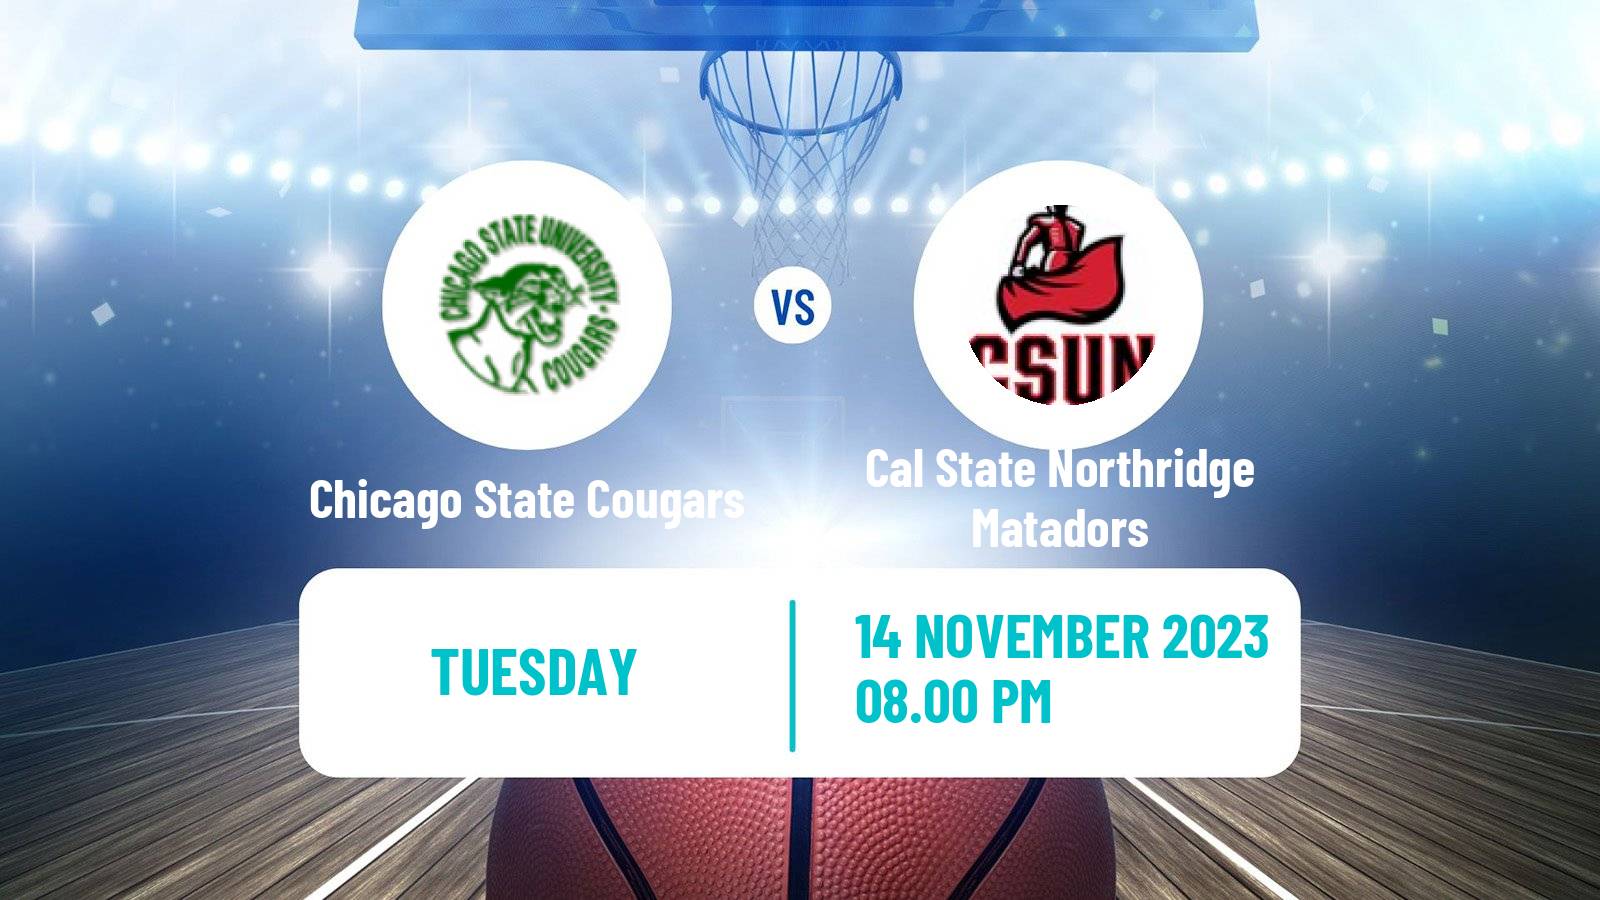 Basketball NCAA College Basketball Chicago State Cougars - Cal State Northridge Matadors